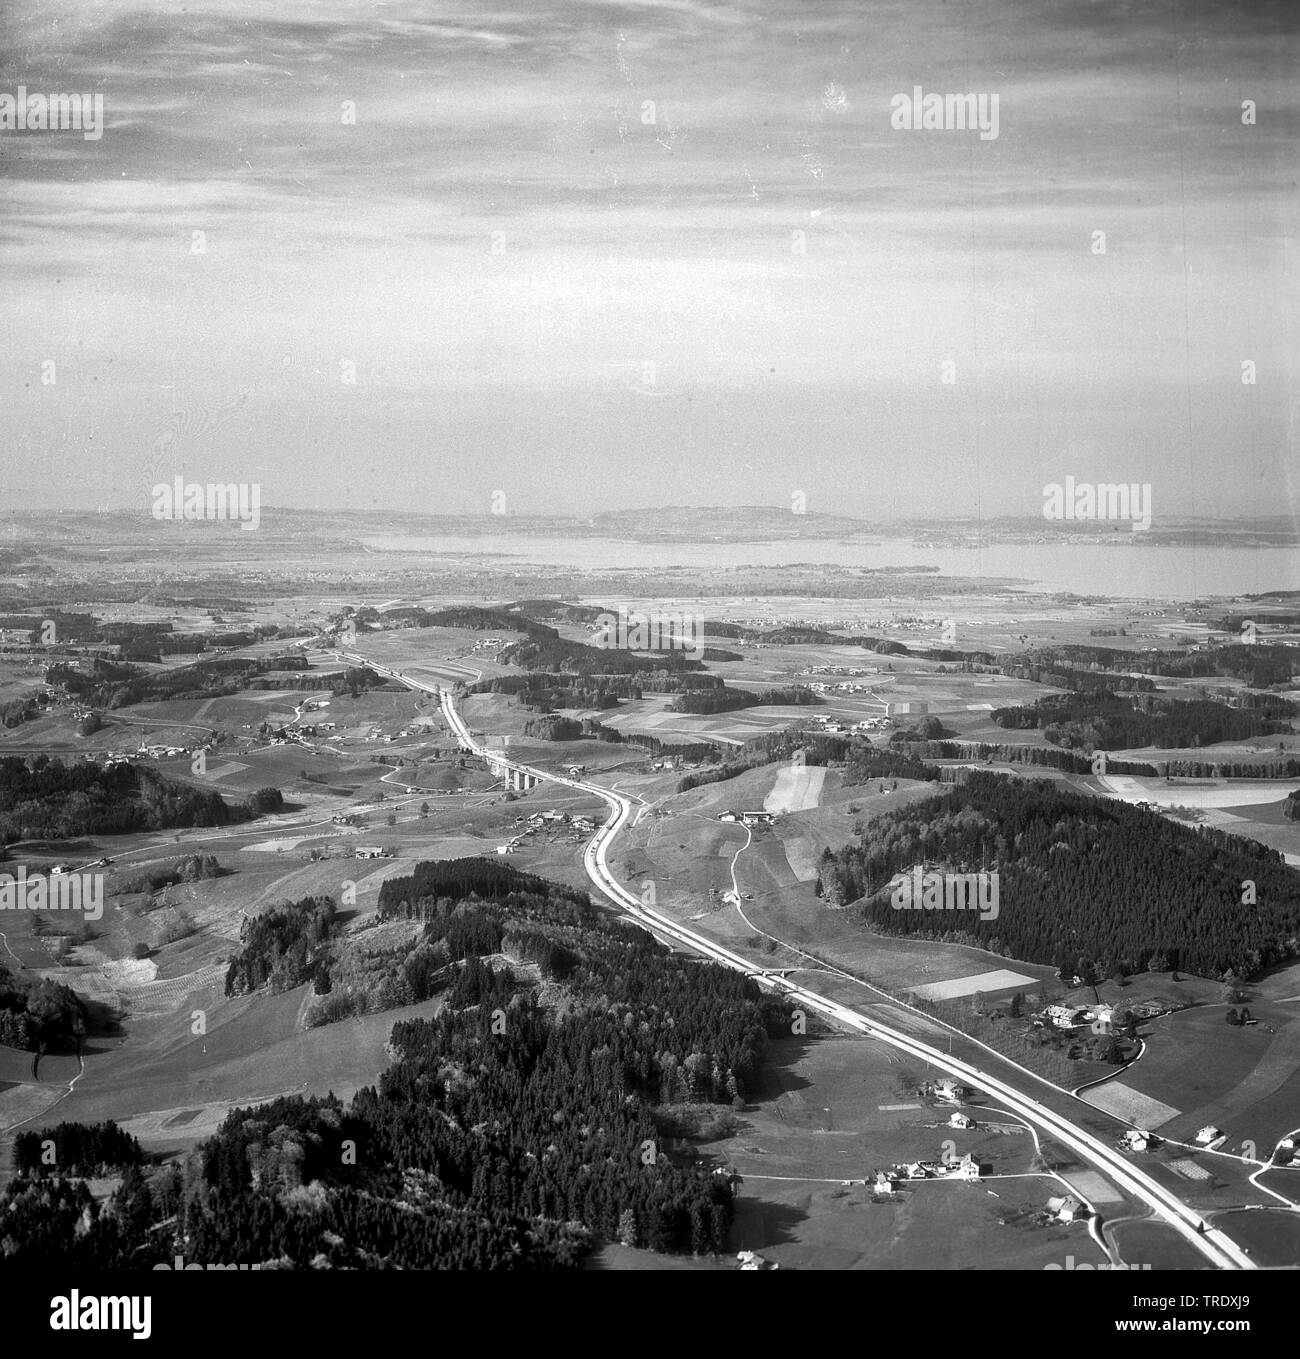 L'autoroute A8 avec le lac de Chiemsee en arrière-plan, photo aérienne de l'année 1960, Allemagne Banque D'Images